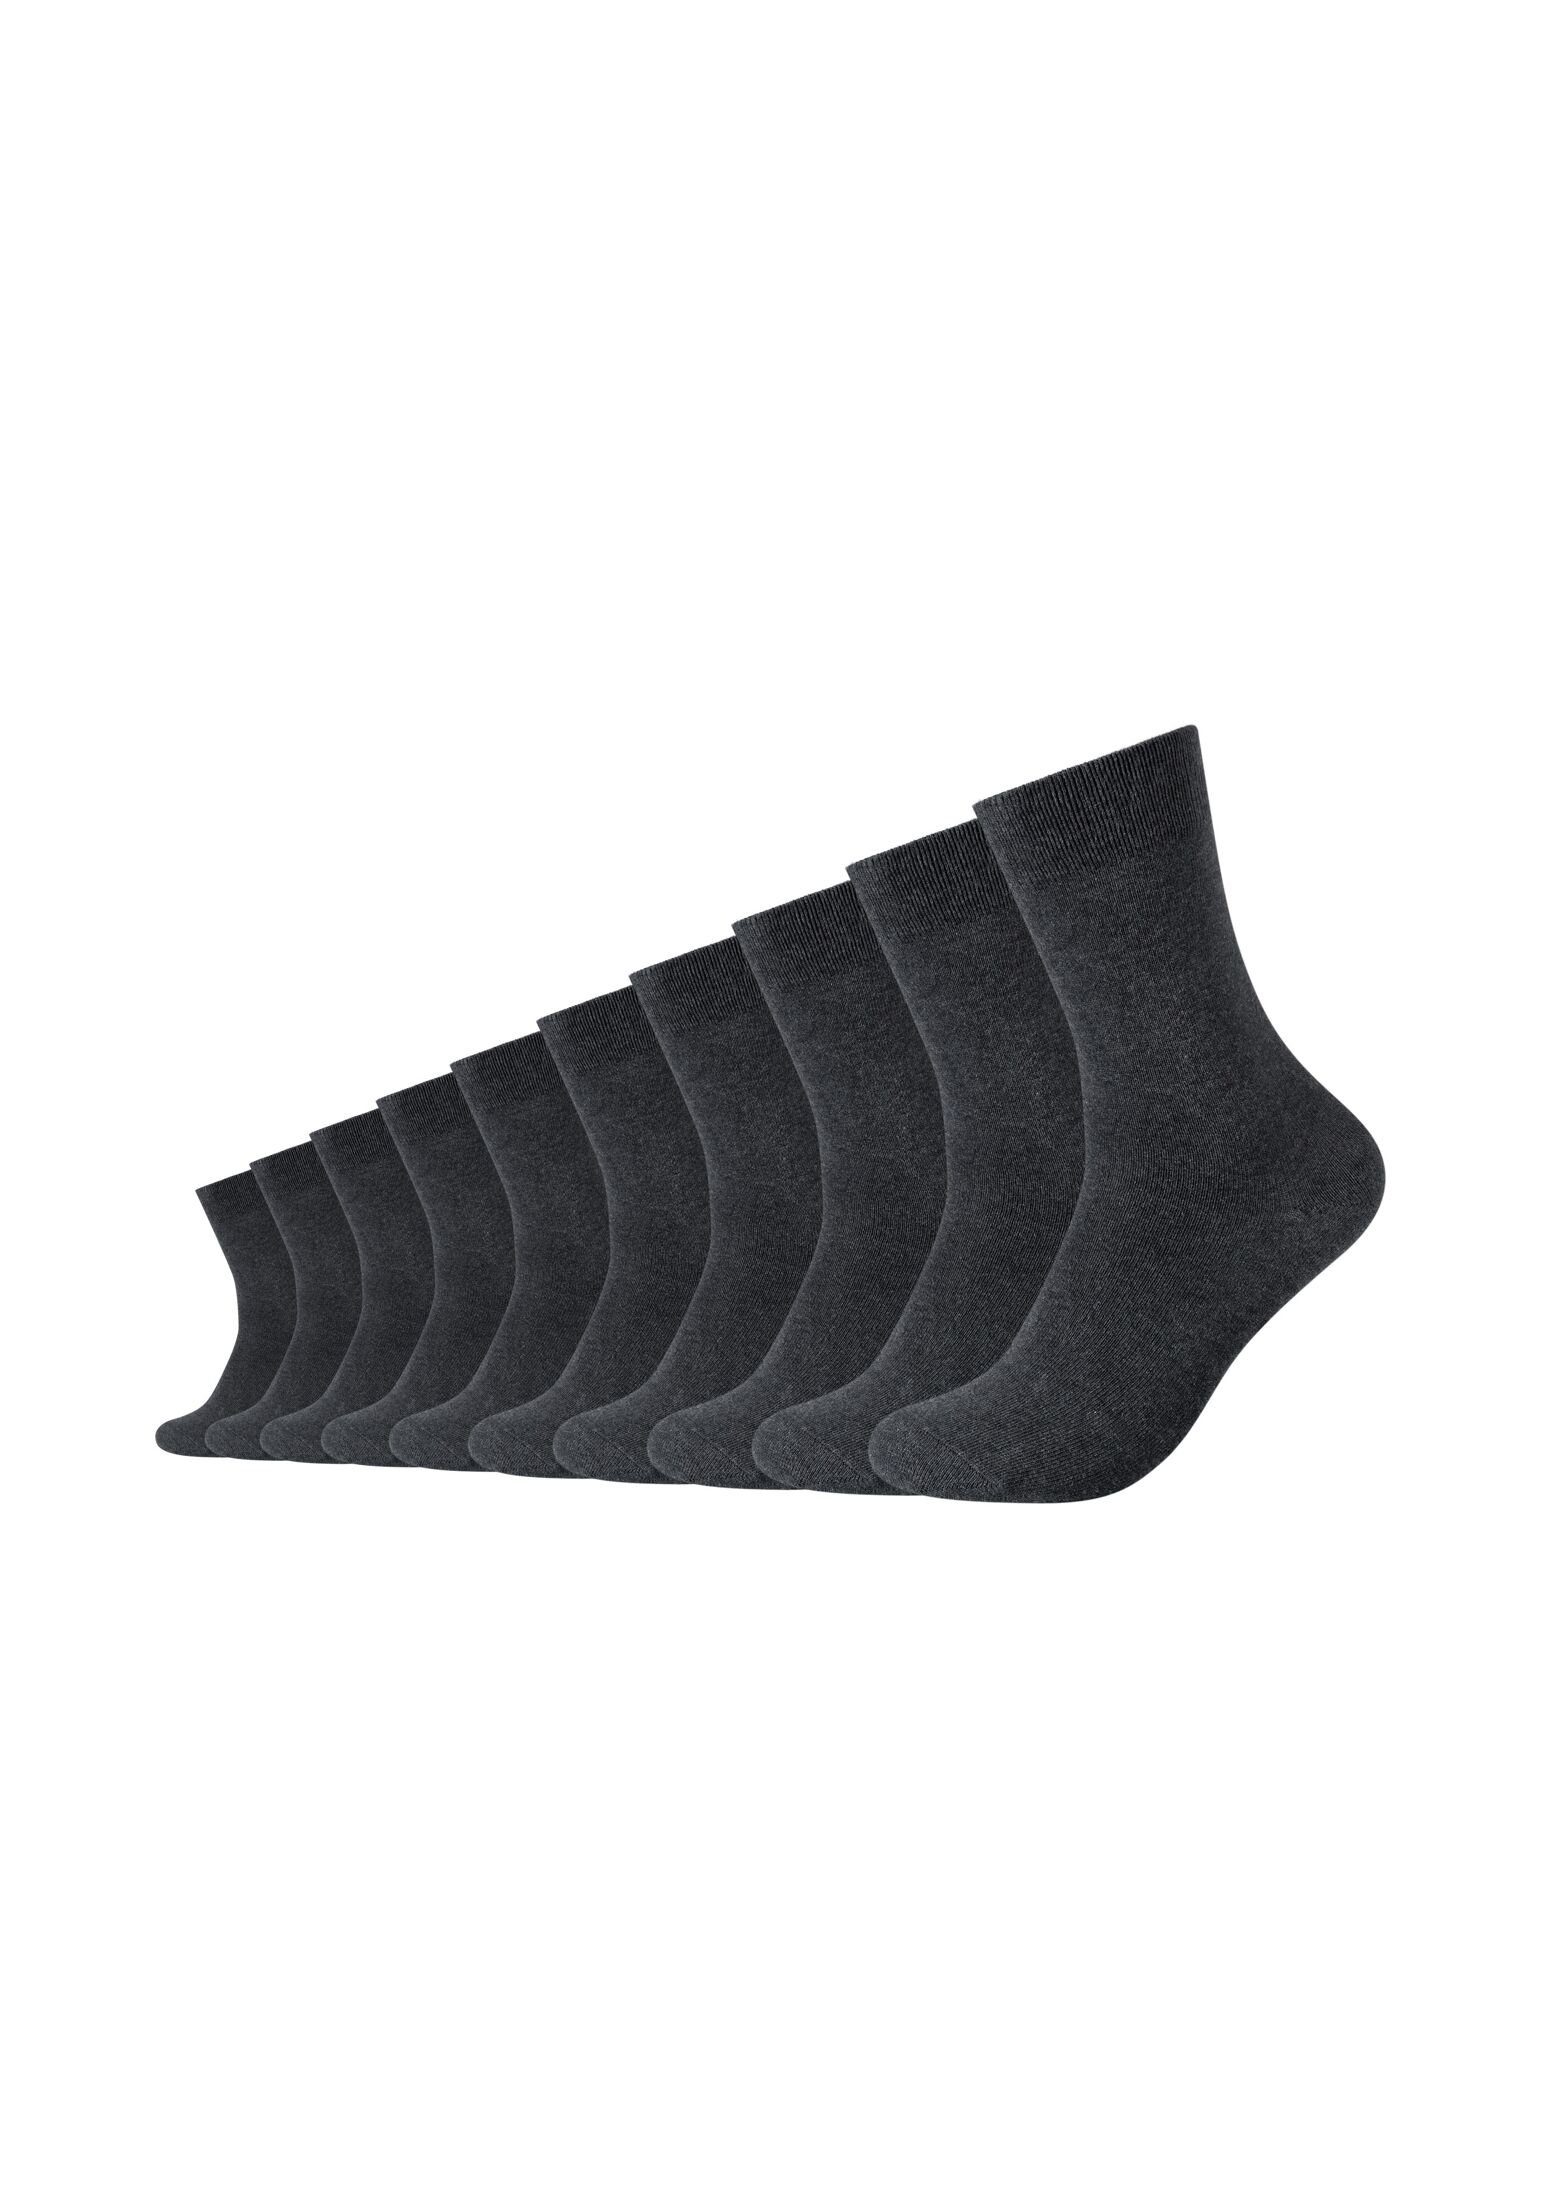 Camano Socken Socken 10er Pack anthracite melange